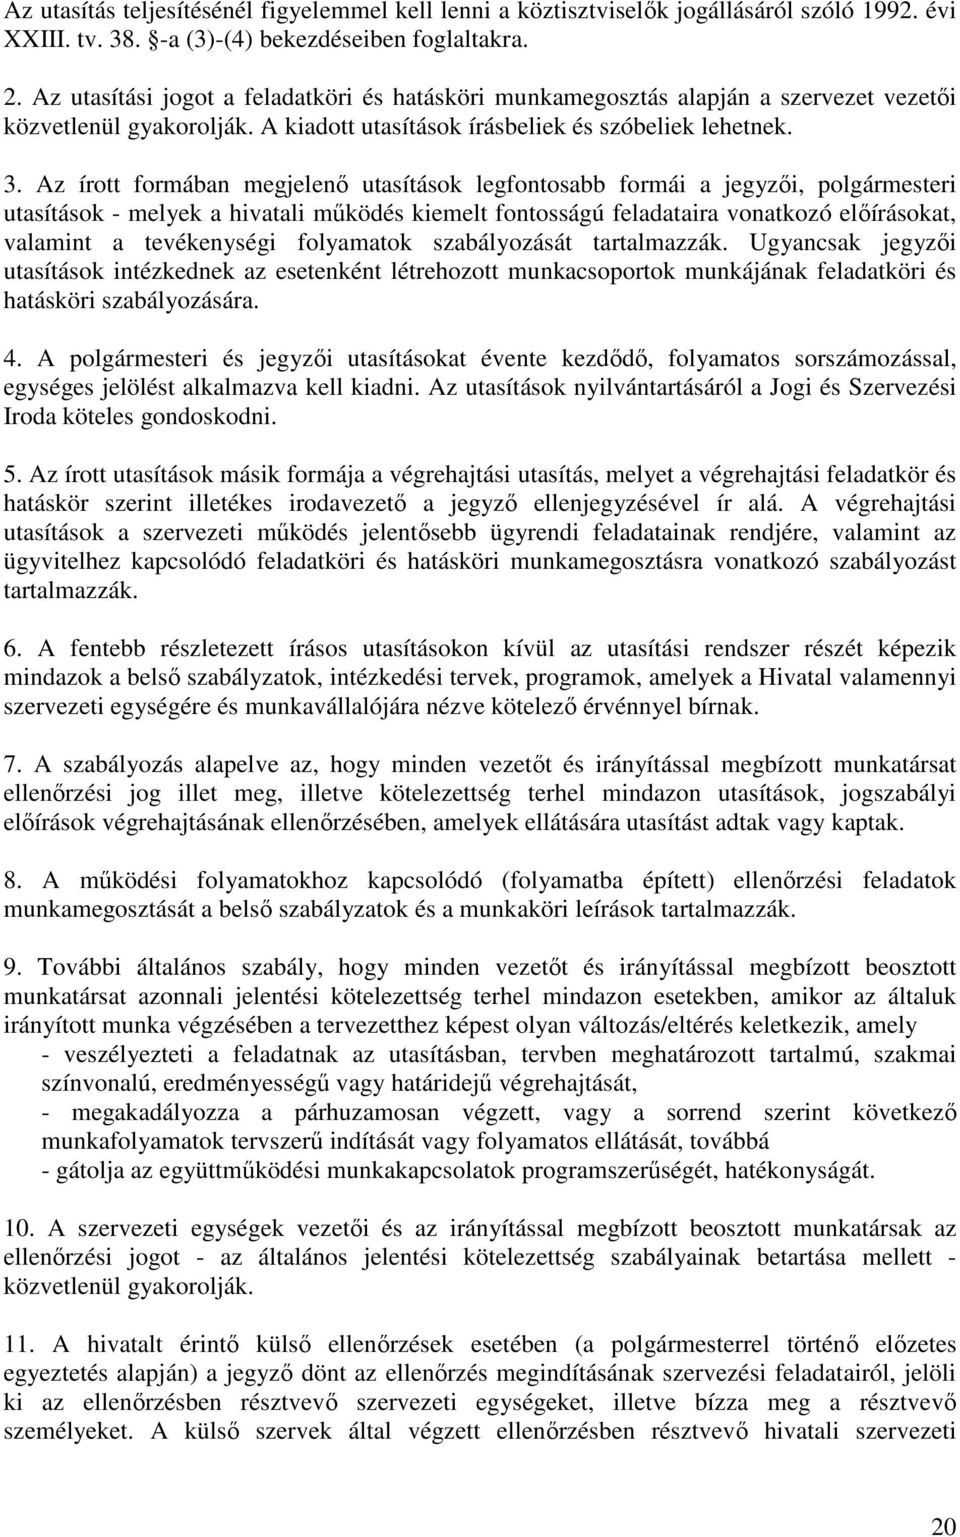 Az írott formában megjelenı utasítások legfontosabb formái a jegyzıi, polgármesteri utasítások - melyek a hivatali mőködés kiemelt fontosságú feladataira vonatkozó elıírásokat, valamint a